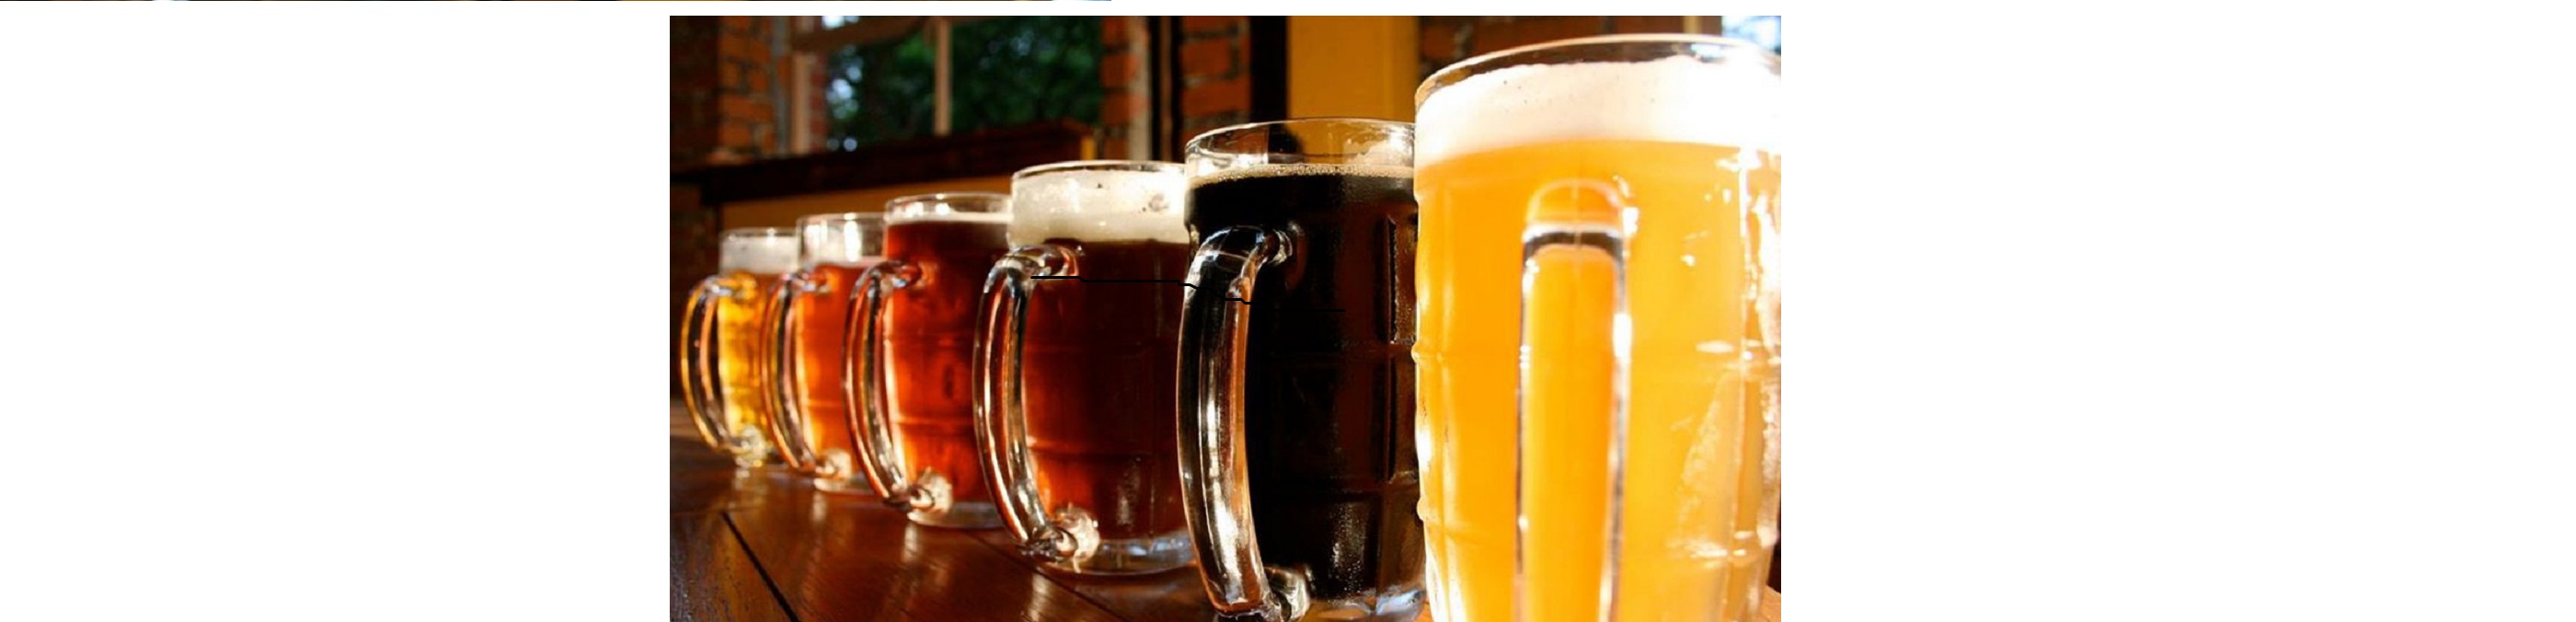 Государственные стандарты качества для пива и ряда спиртных напитков будут контролироваться благодаря обязательной маркировке по проекту Министерства финансов РФ